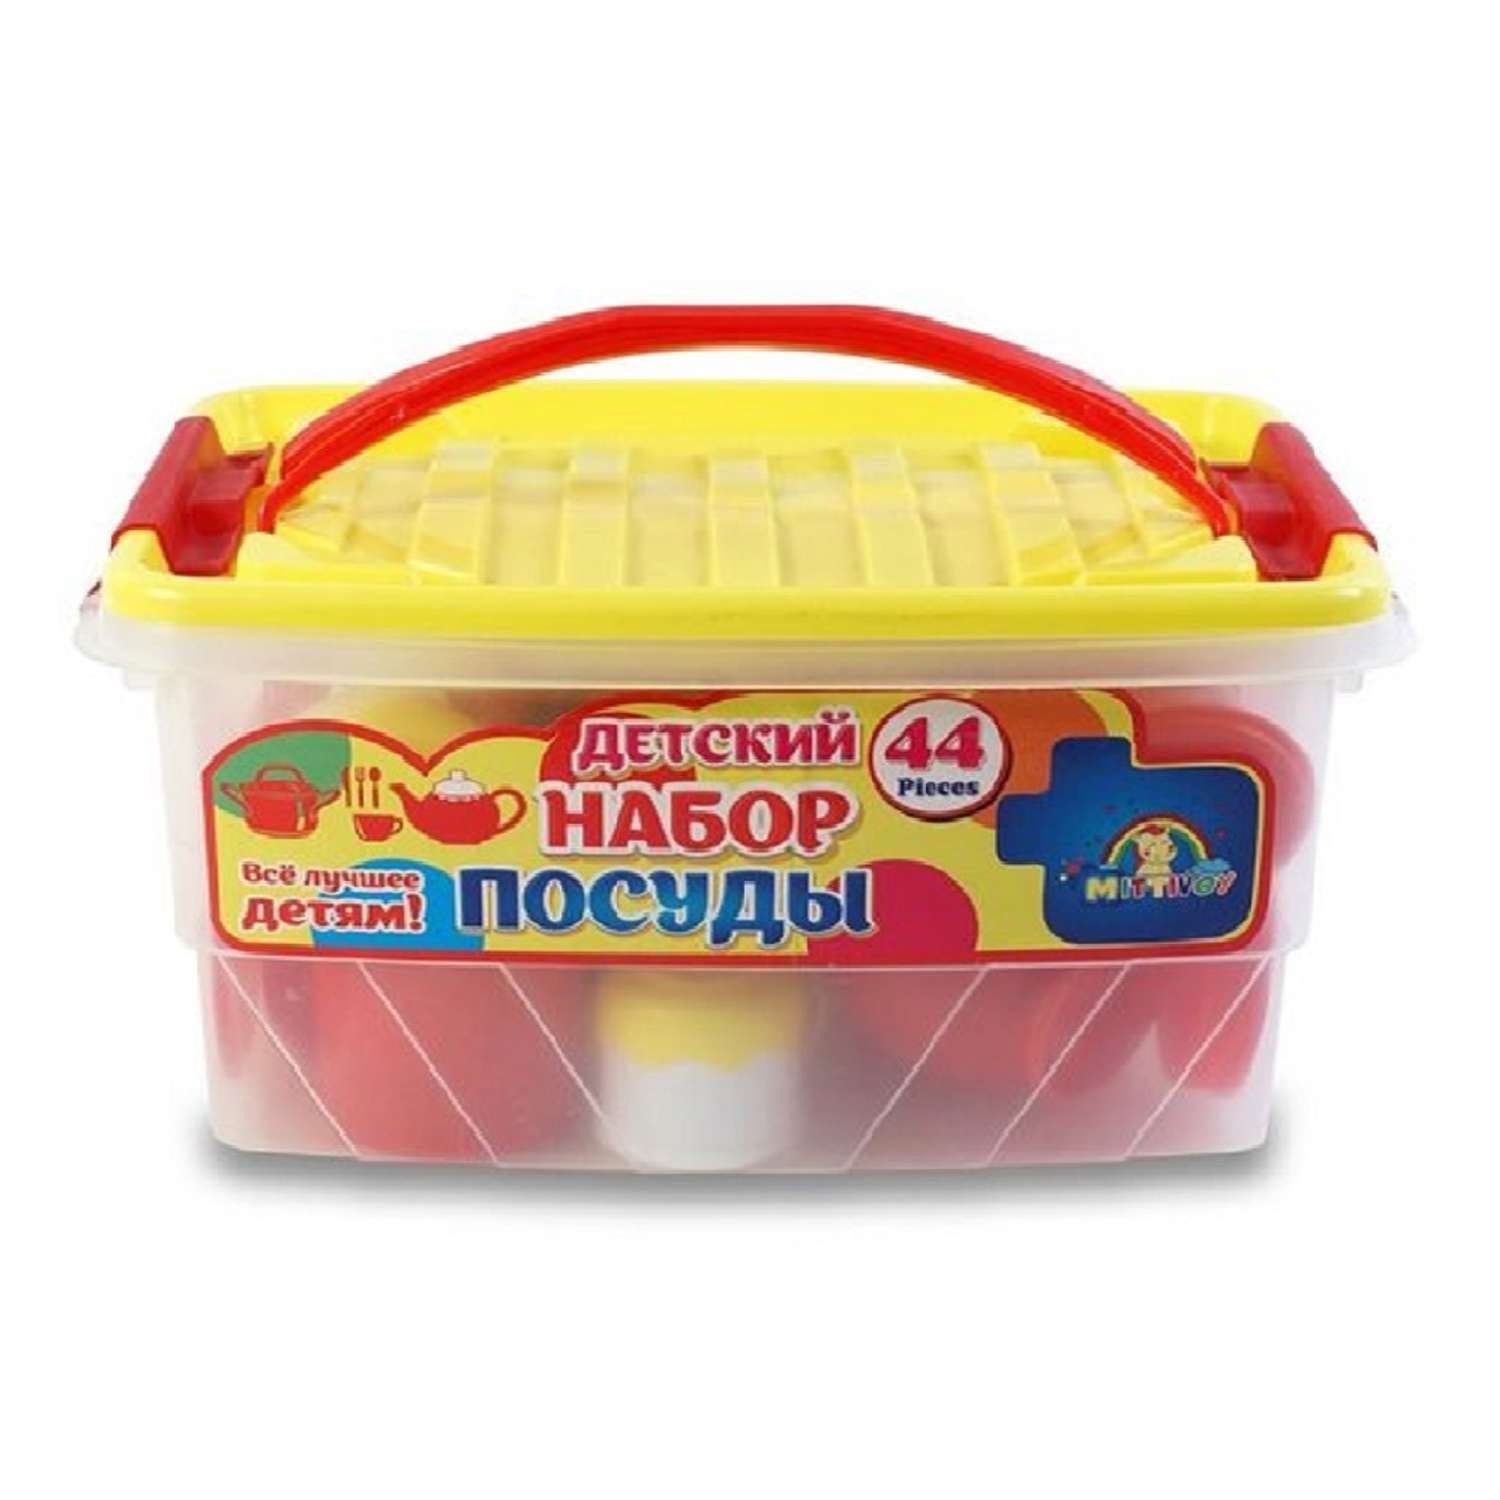 Набор игрушечной посуды TOY MIX Детский развивающий в пластиковом контейнере KMP 200 - фото 7